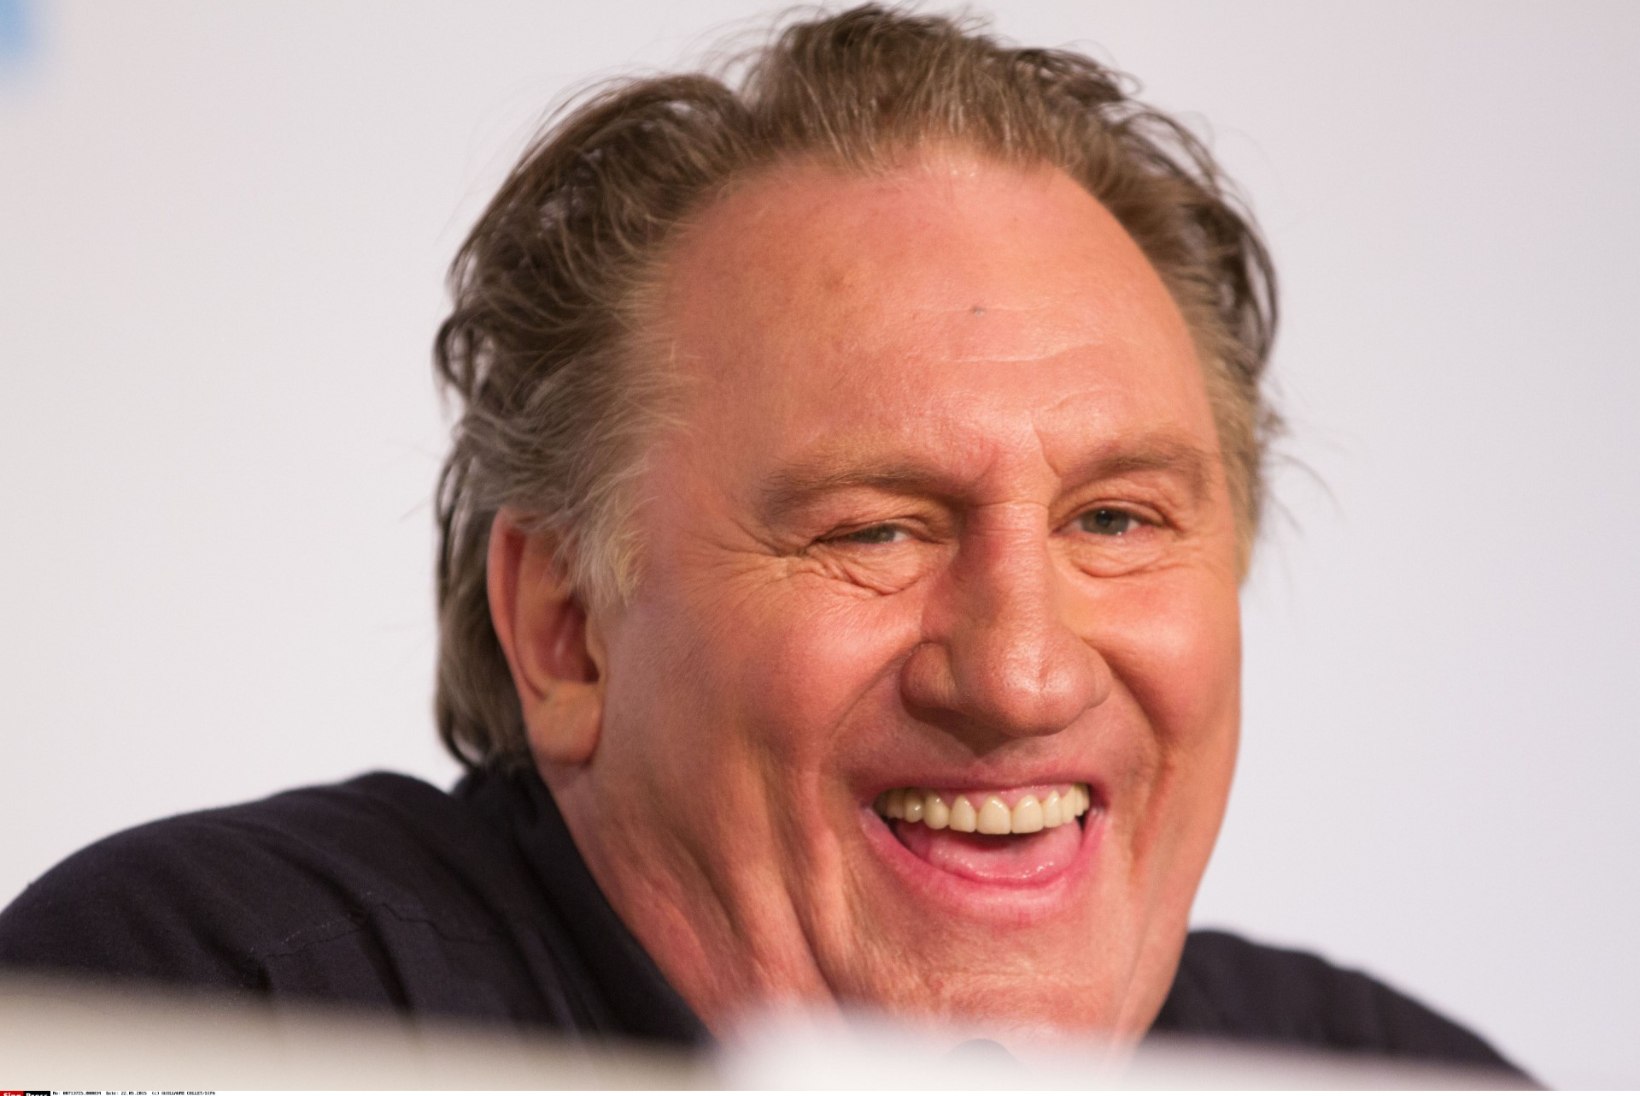 Kõlakanurk: Gérard Depardieu hakkab mängima Netflixi uues seriaalis?